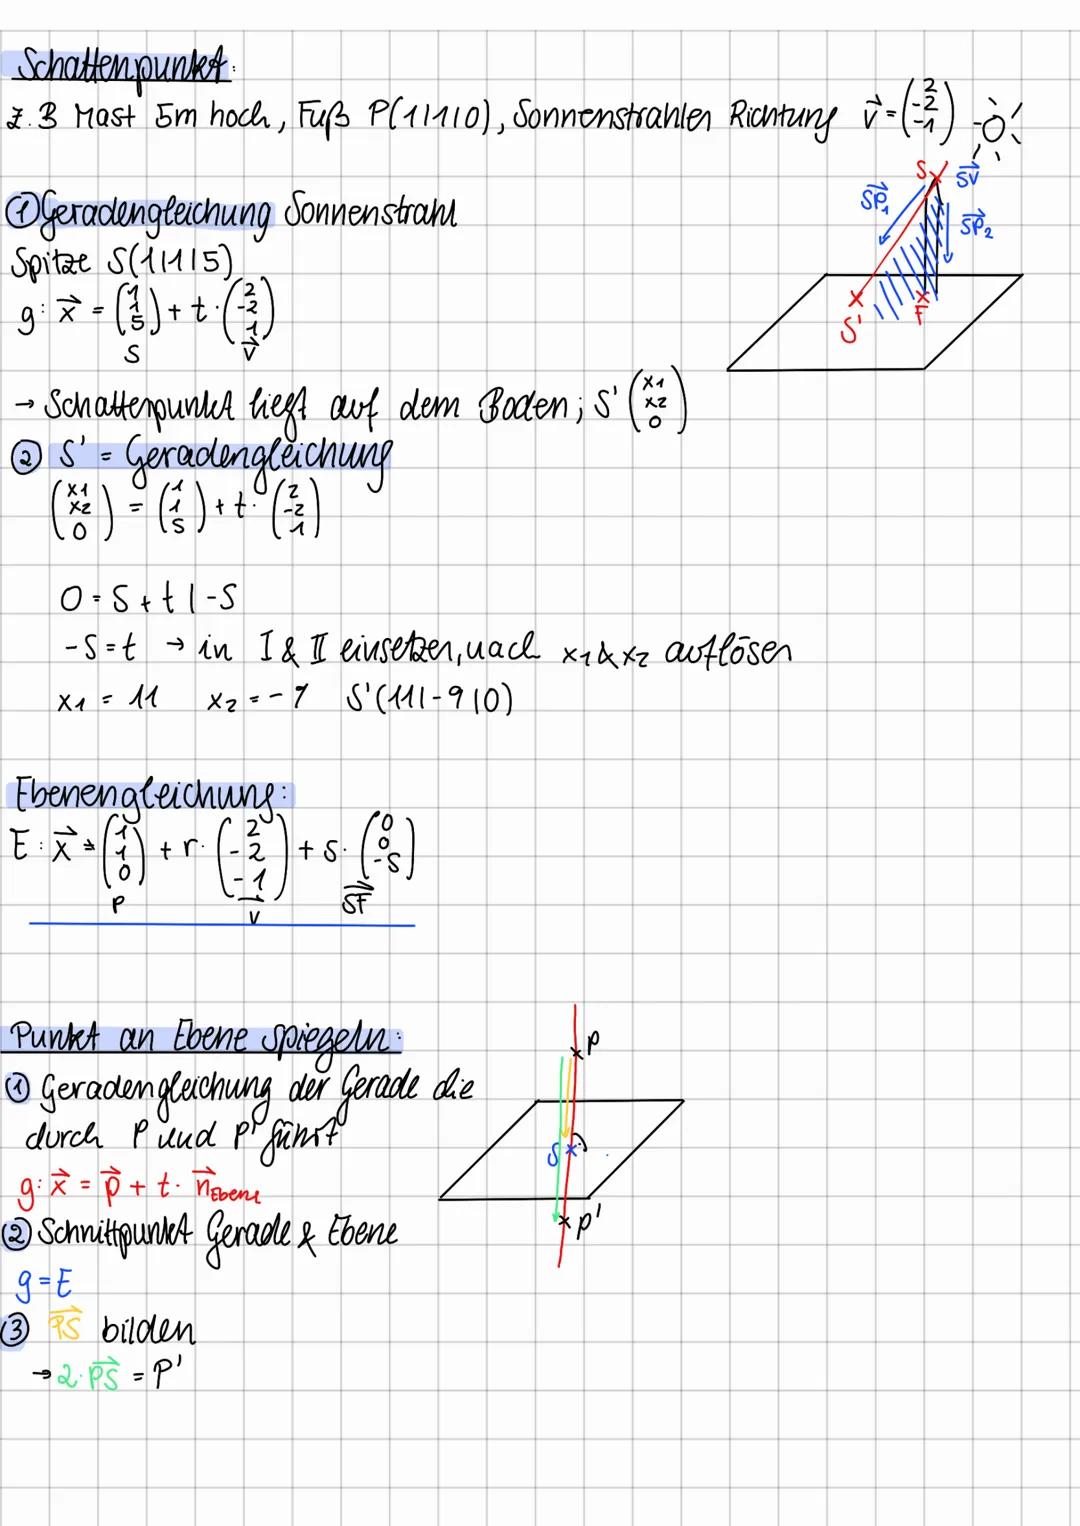 Vektor Pfeildarstellung einer bestimmten Länge, der in eine bestimmte Richtung verläuft
Verbindungsvektor Strecke zwischen zwei Punkter /Ort